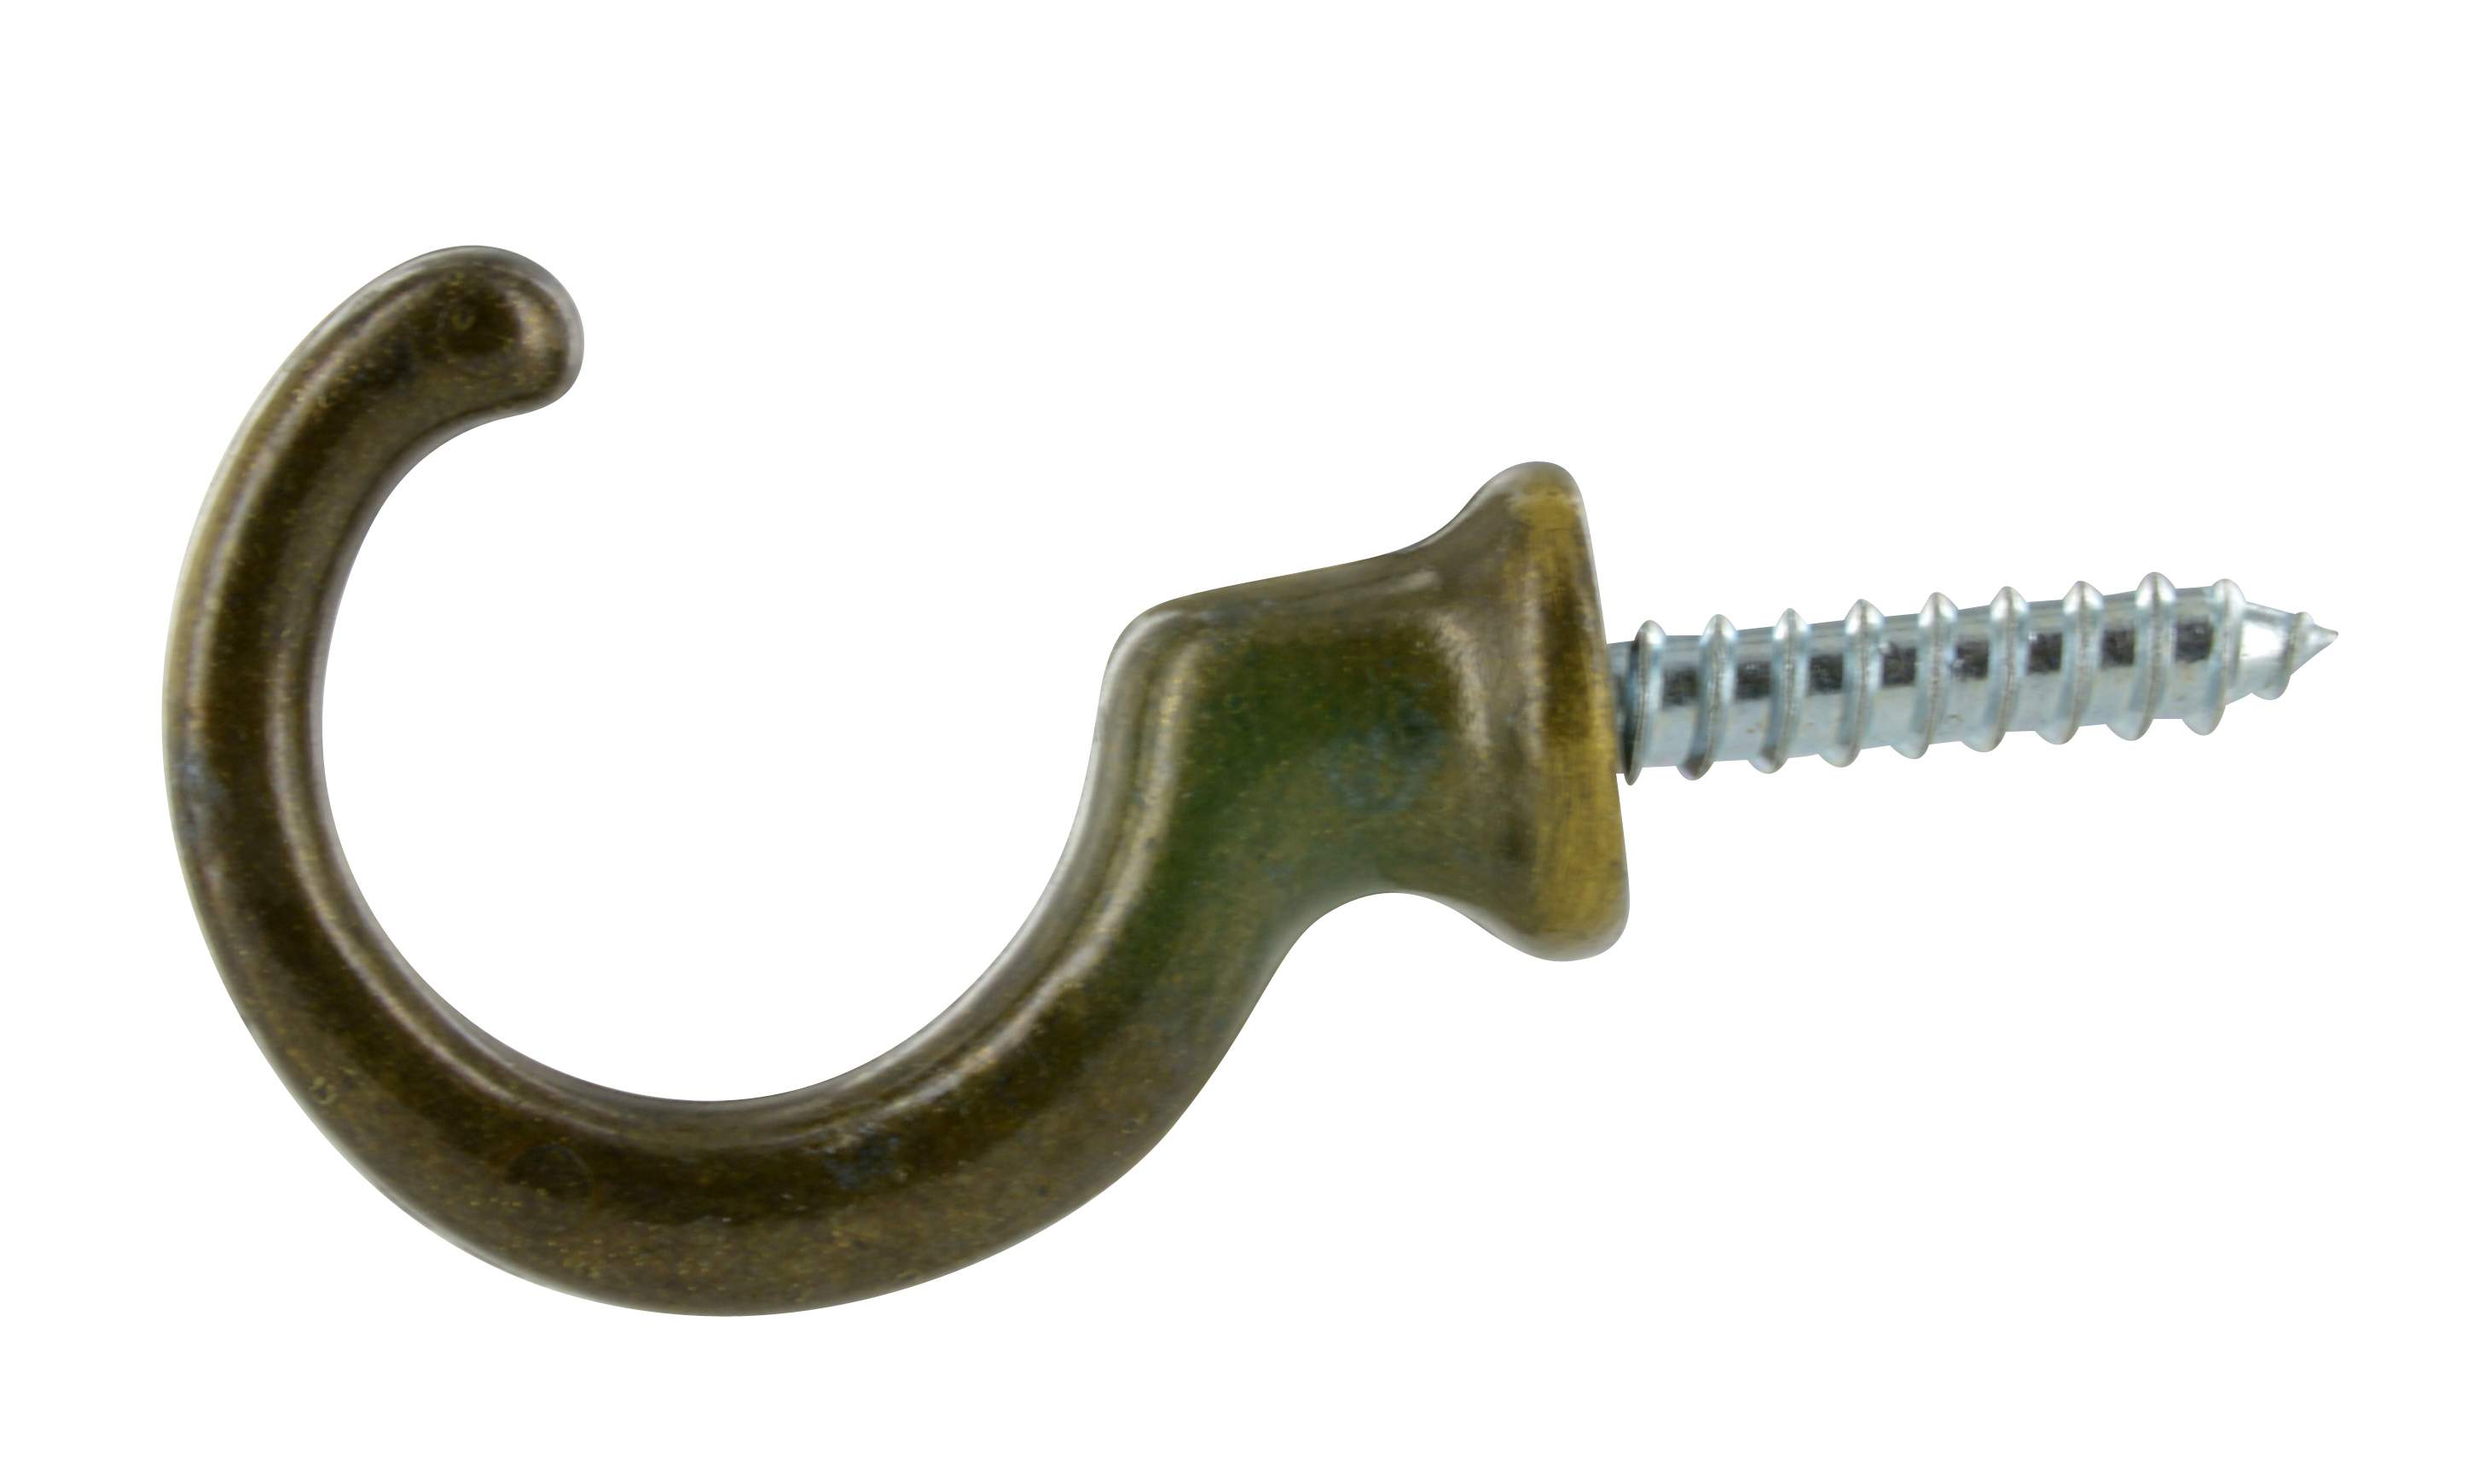 Crochet embrasse, Zamak bronze, L.35mm, H.27mm, 2 pièces avec visserie.